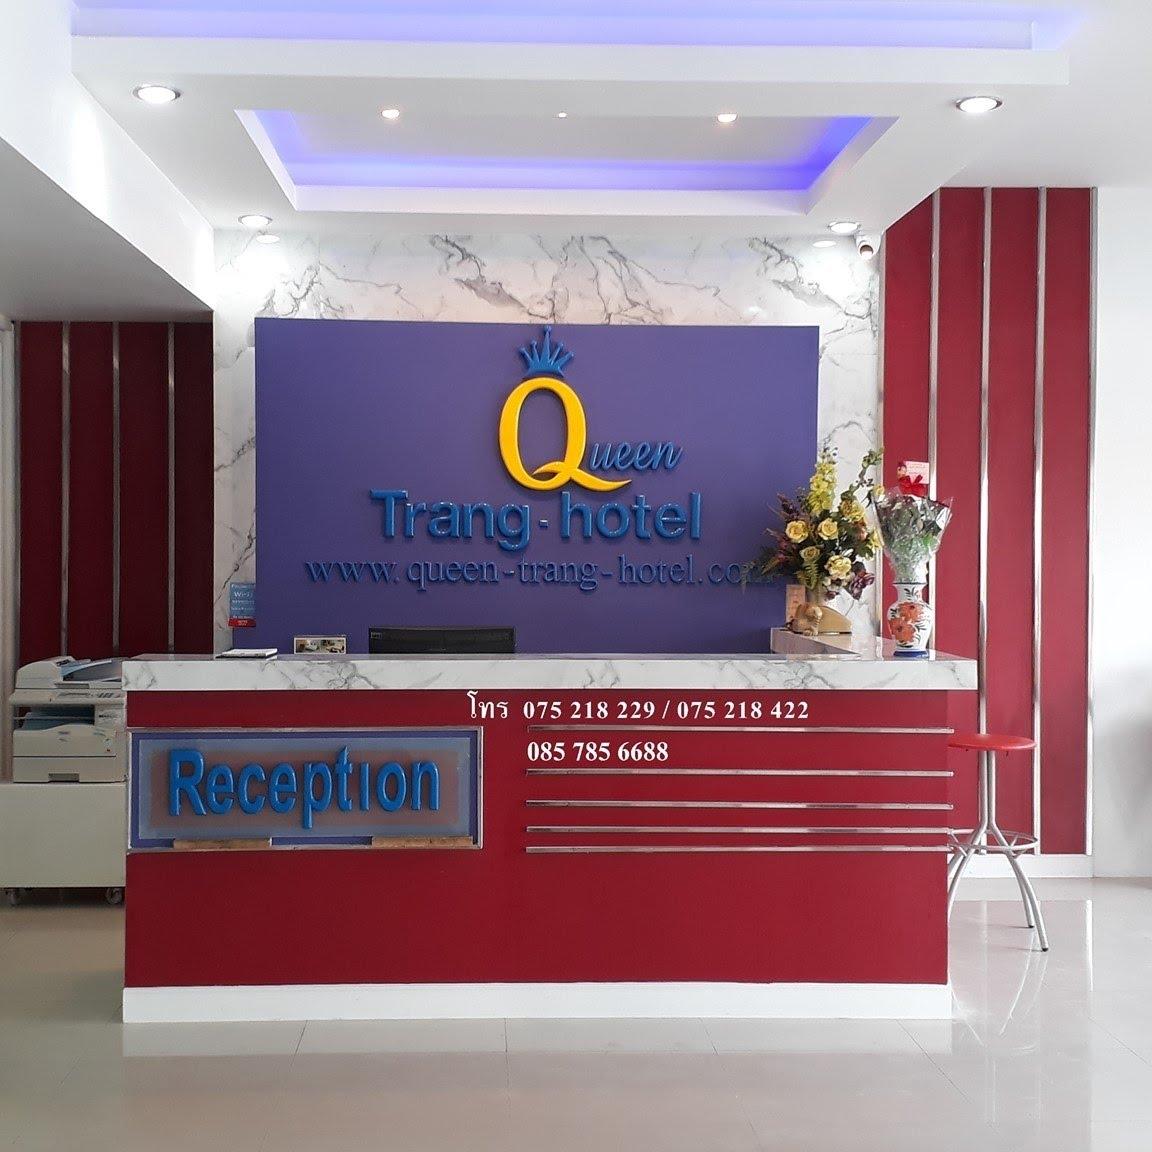 2. โรงแรมเอสทูเอสควีนตรัง (S2S Queen Trang Hotel)